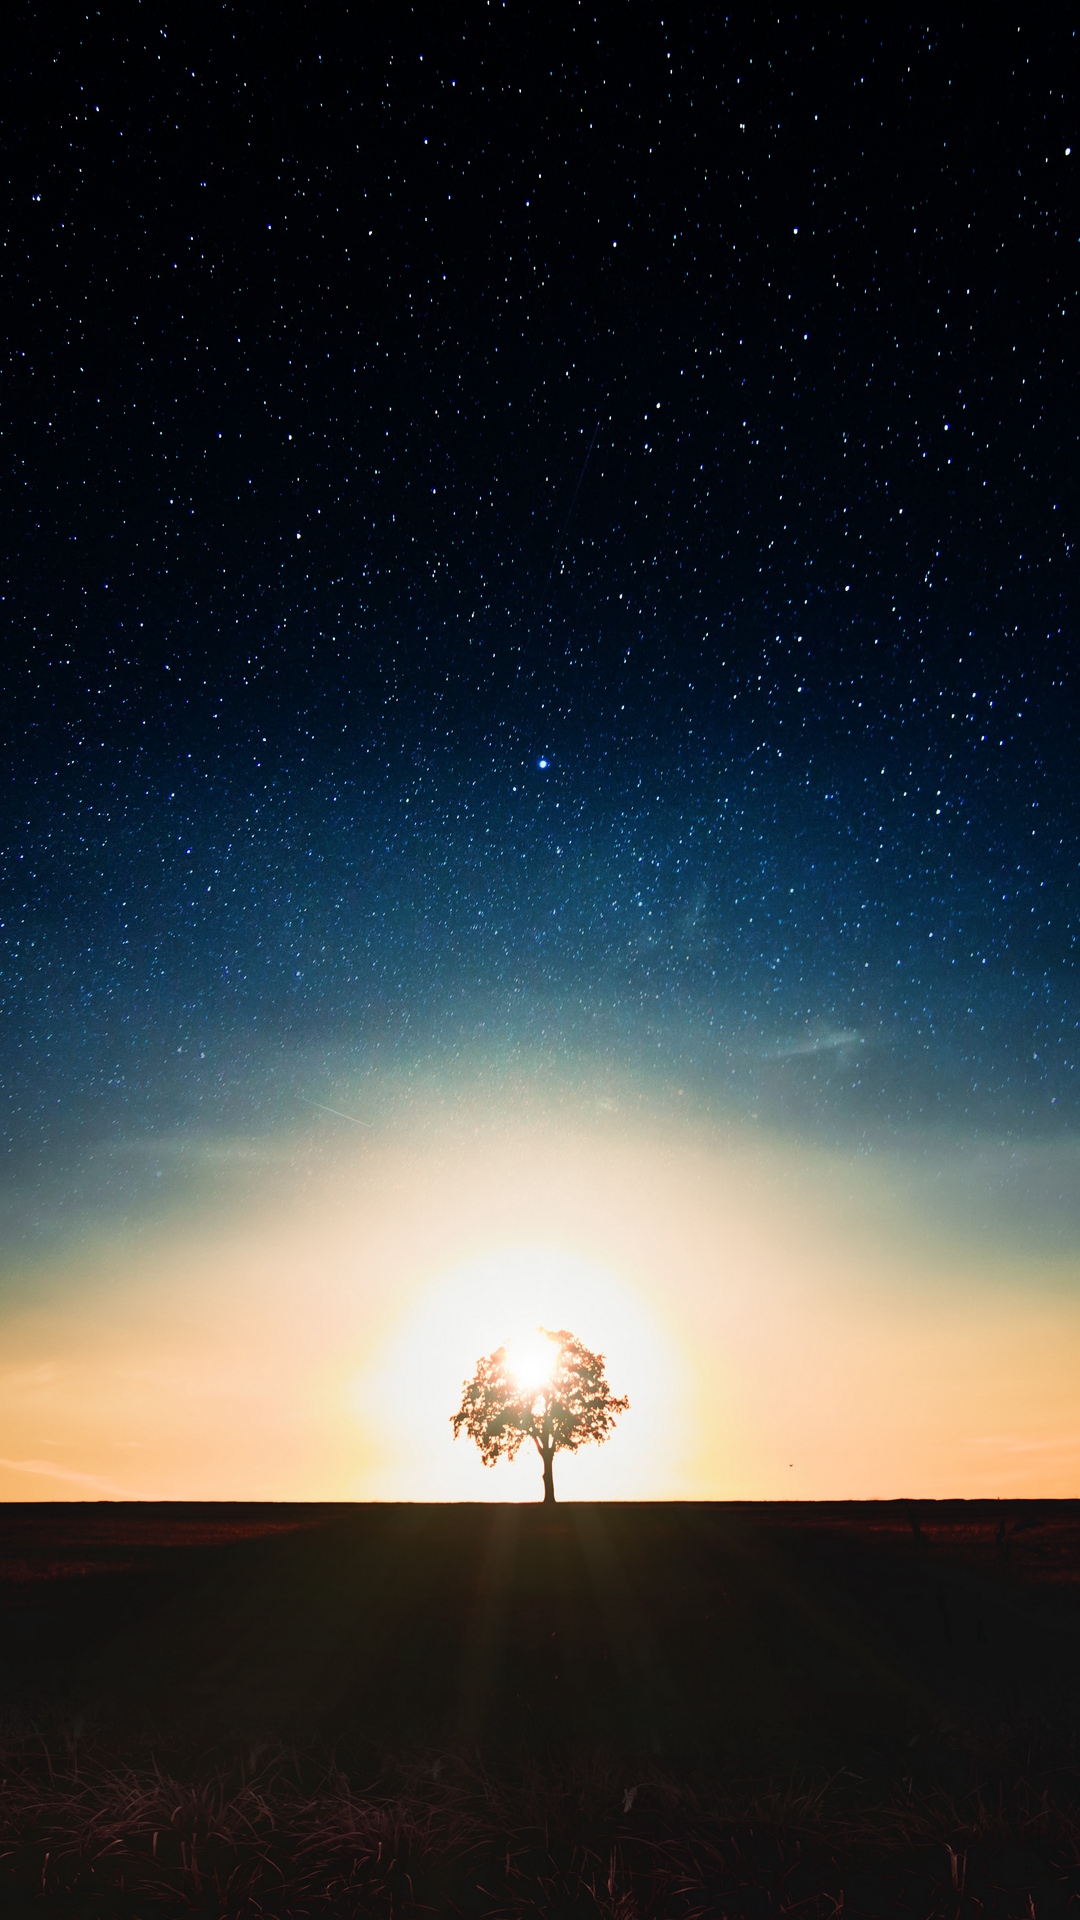 Starry Sky Tree Alone Wallpaper - Tree Alone In Galaxy - 1080x1920 Wallpaper  